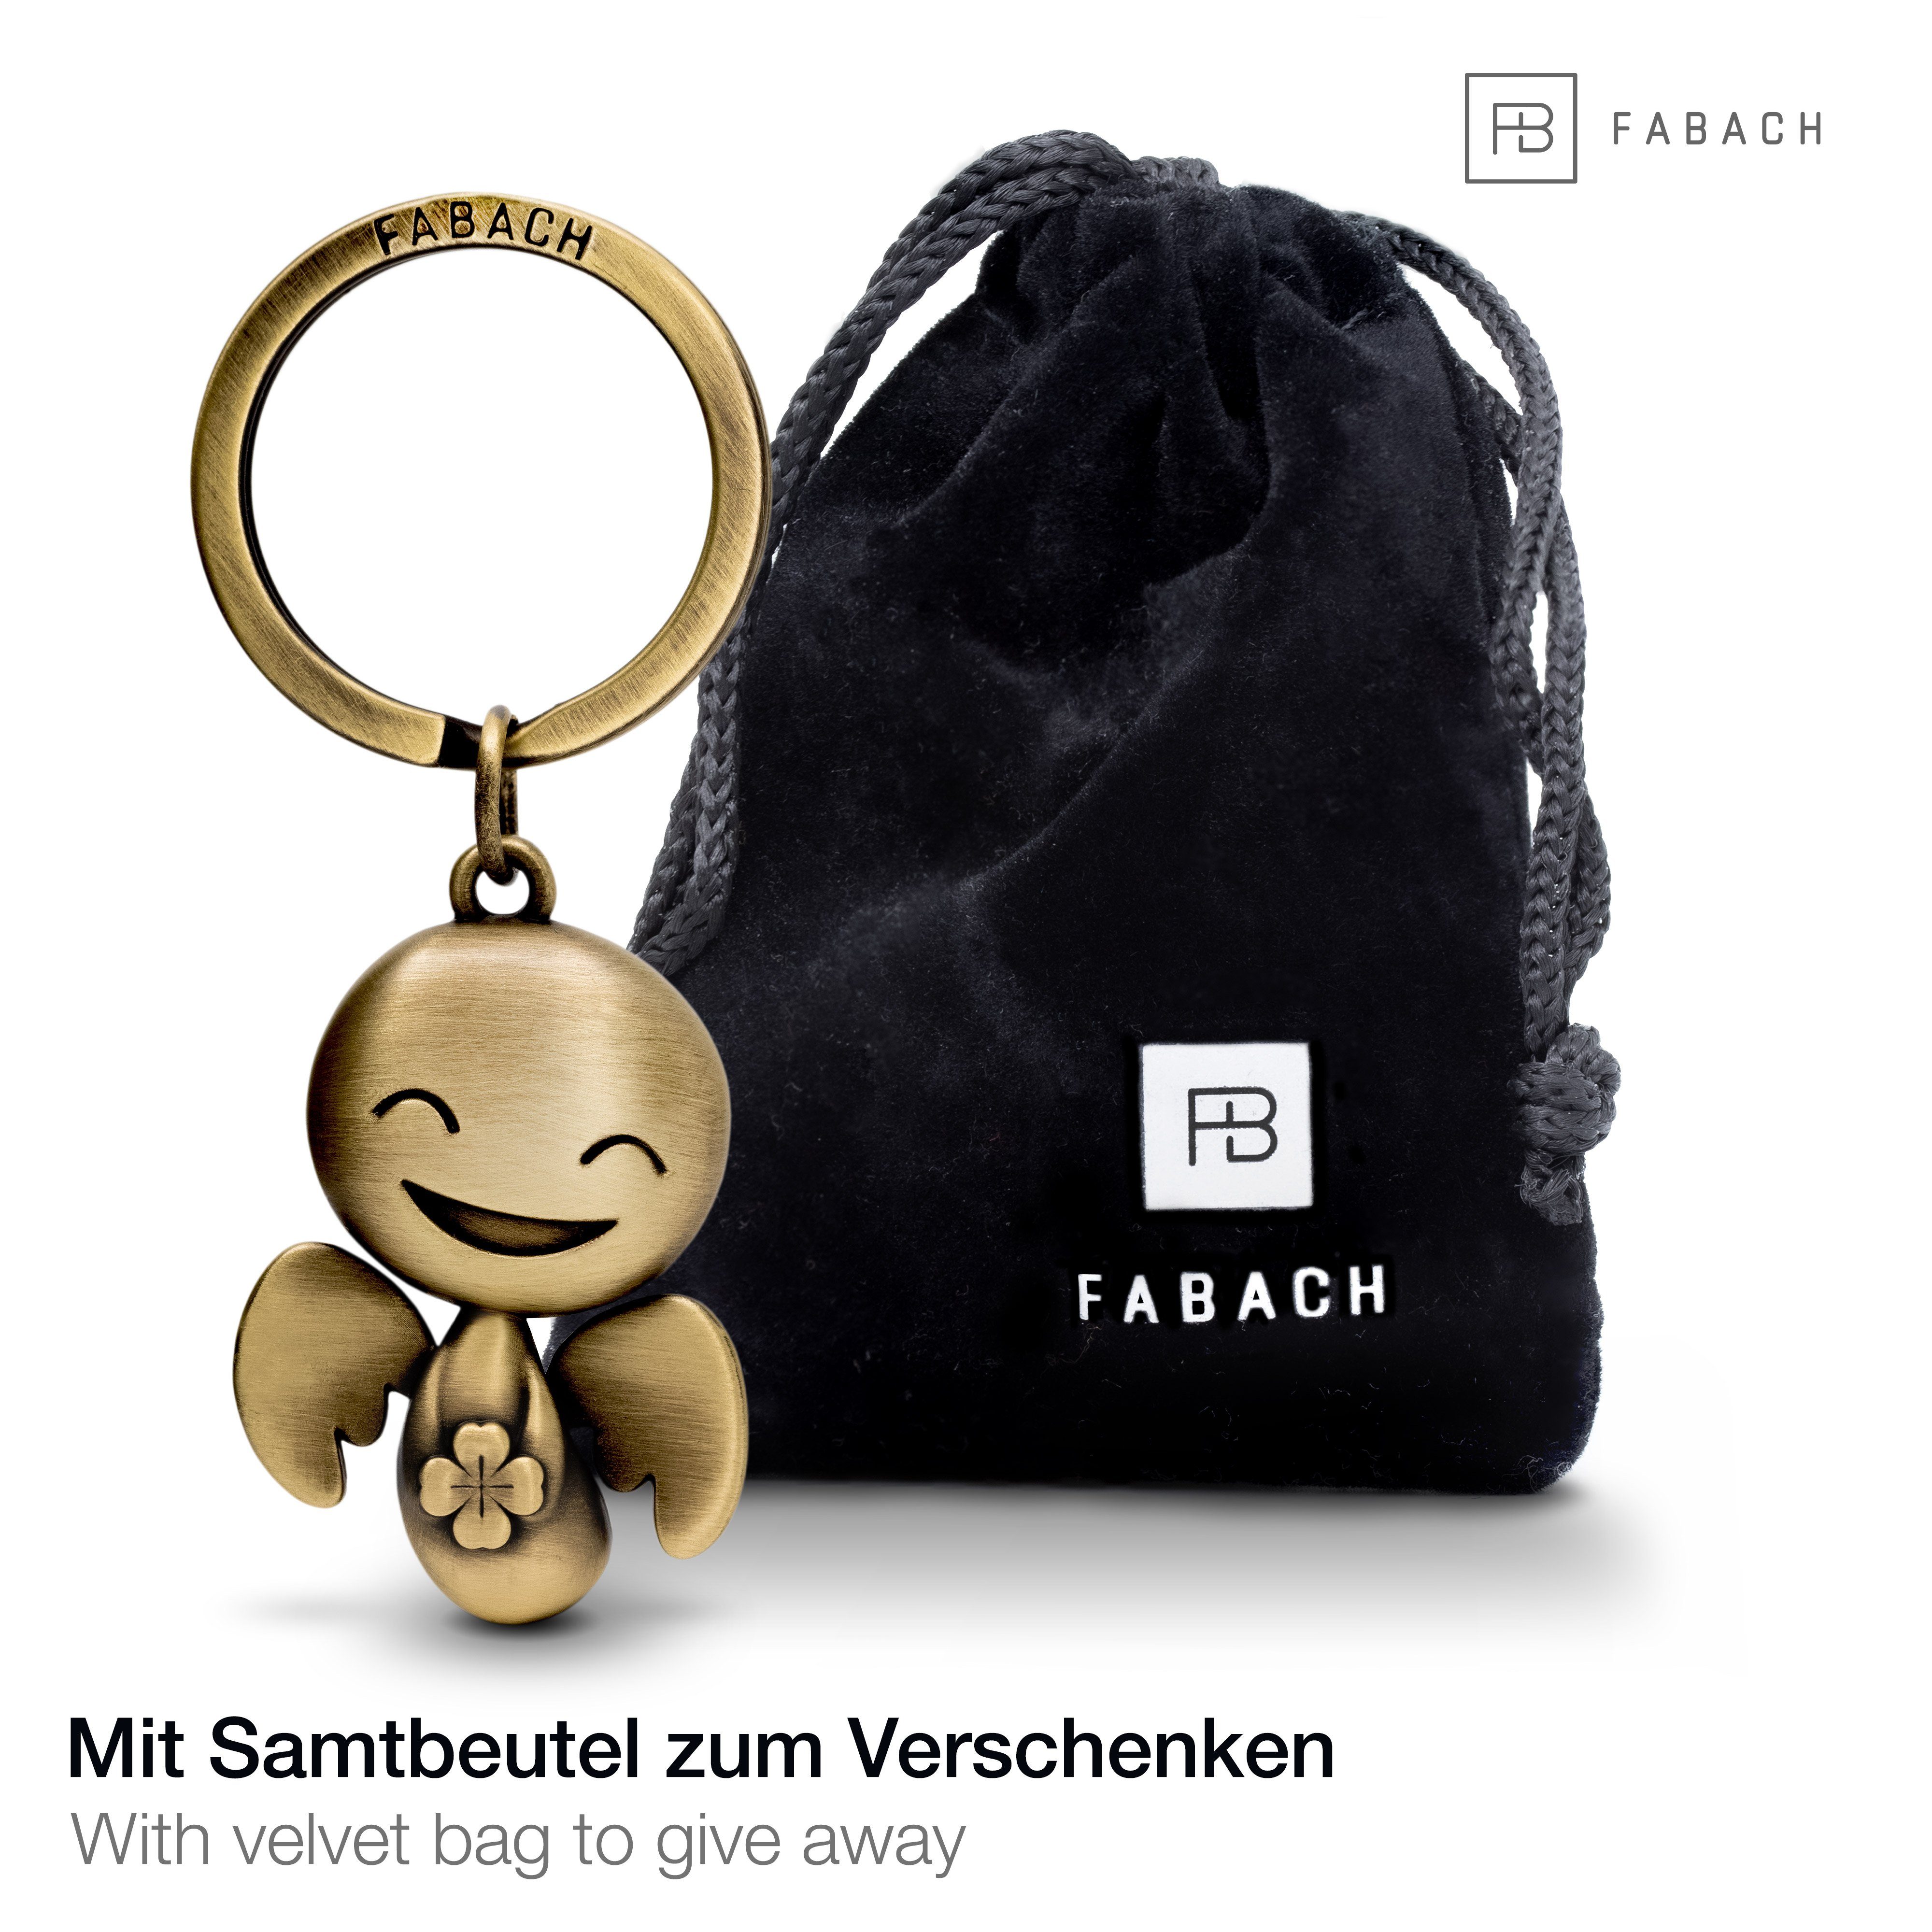 FABACH Schlüsselanhänger Schutzengel Happy mit Viel - Bronze Geschenk - Glück Antique Glücksbringer Kleeblatt